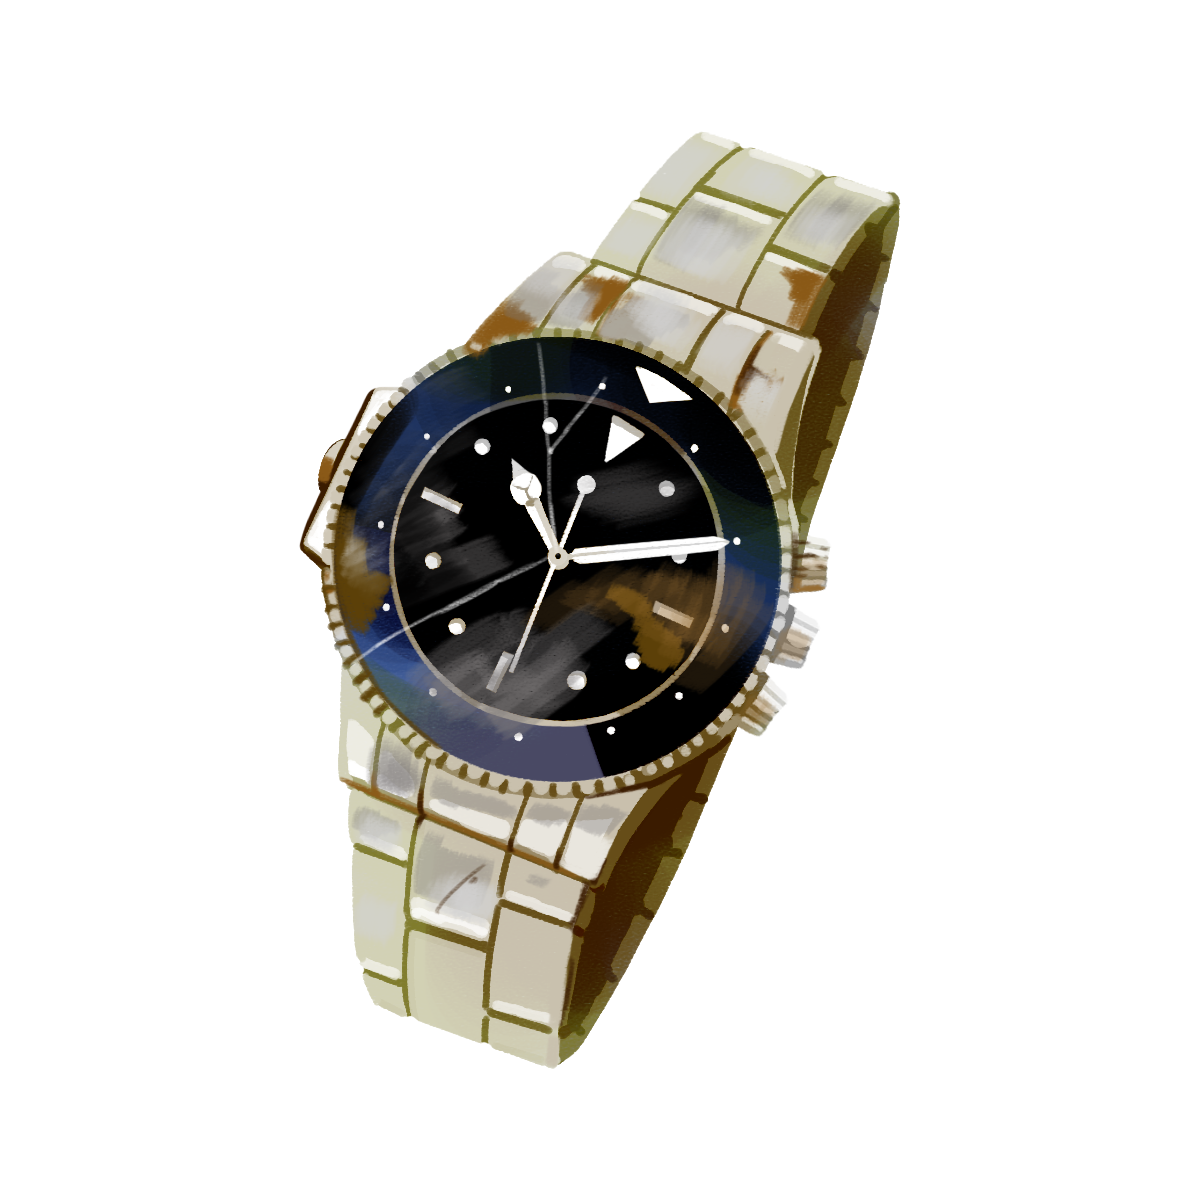 壊れたブランド物の腕時計のイラスト エコのモト